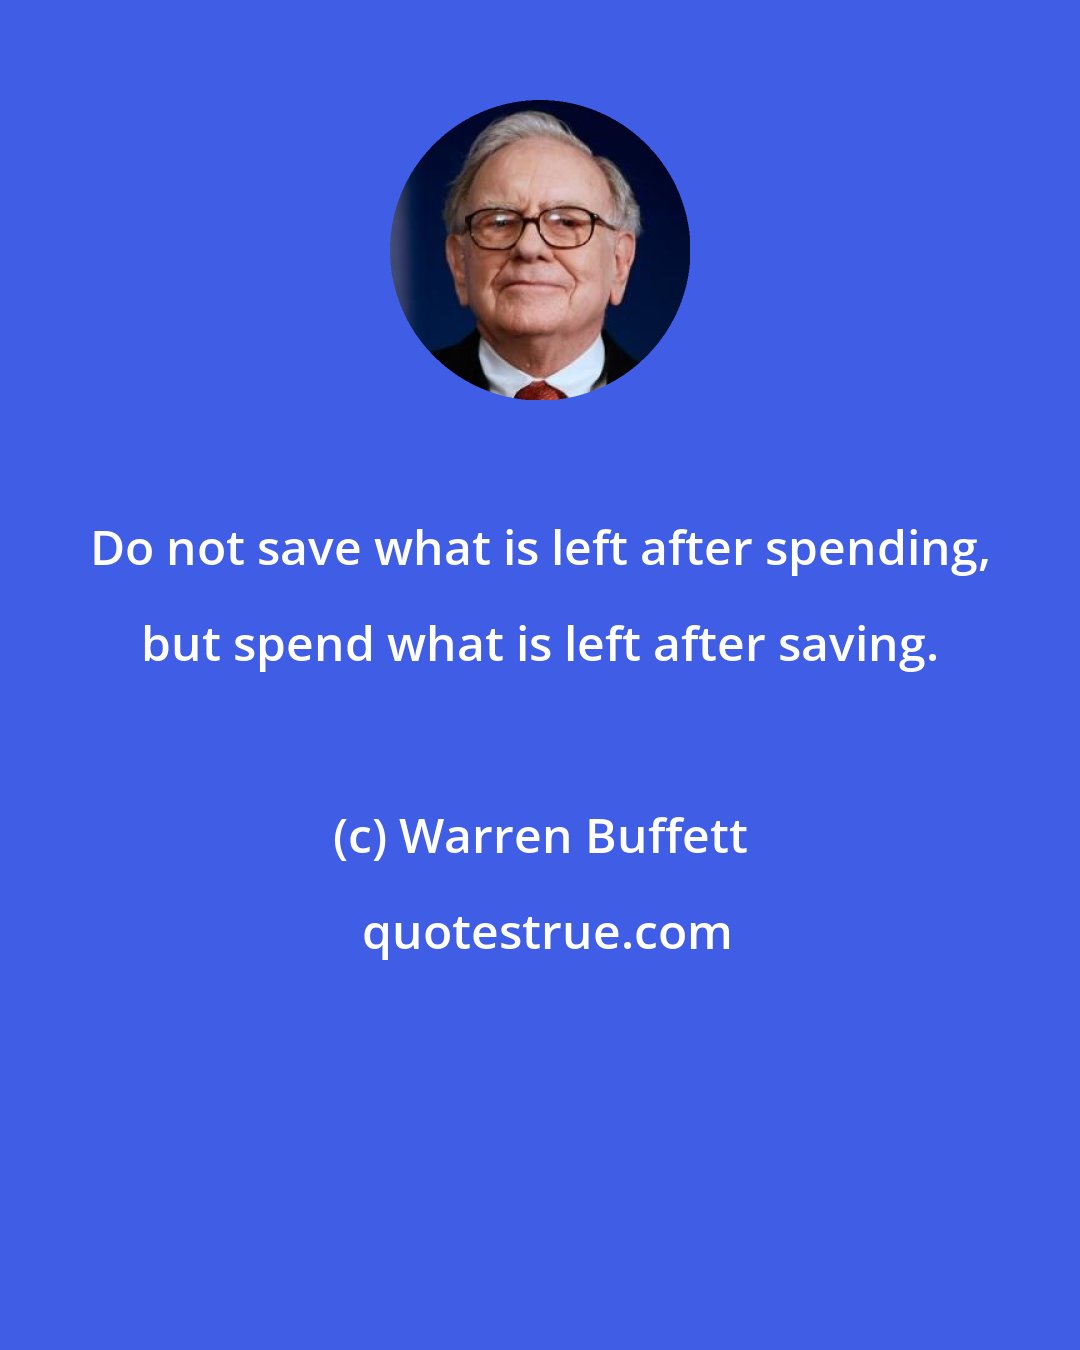 Warren Buffett: Do not save what is left after spending, but spend what is left after saving.